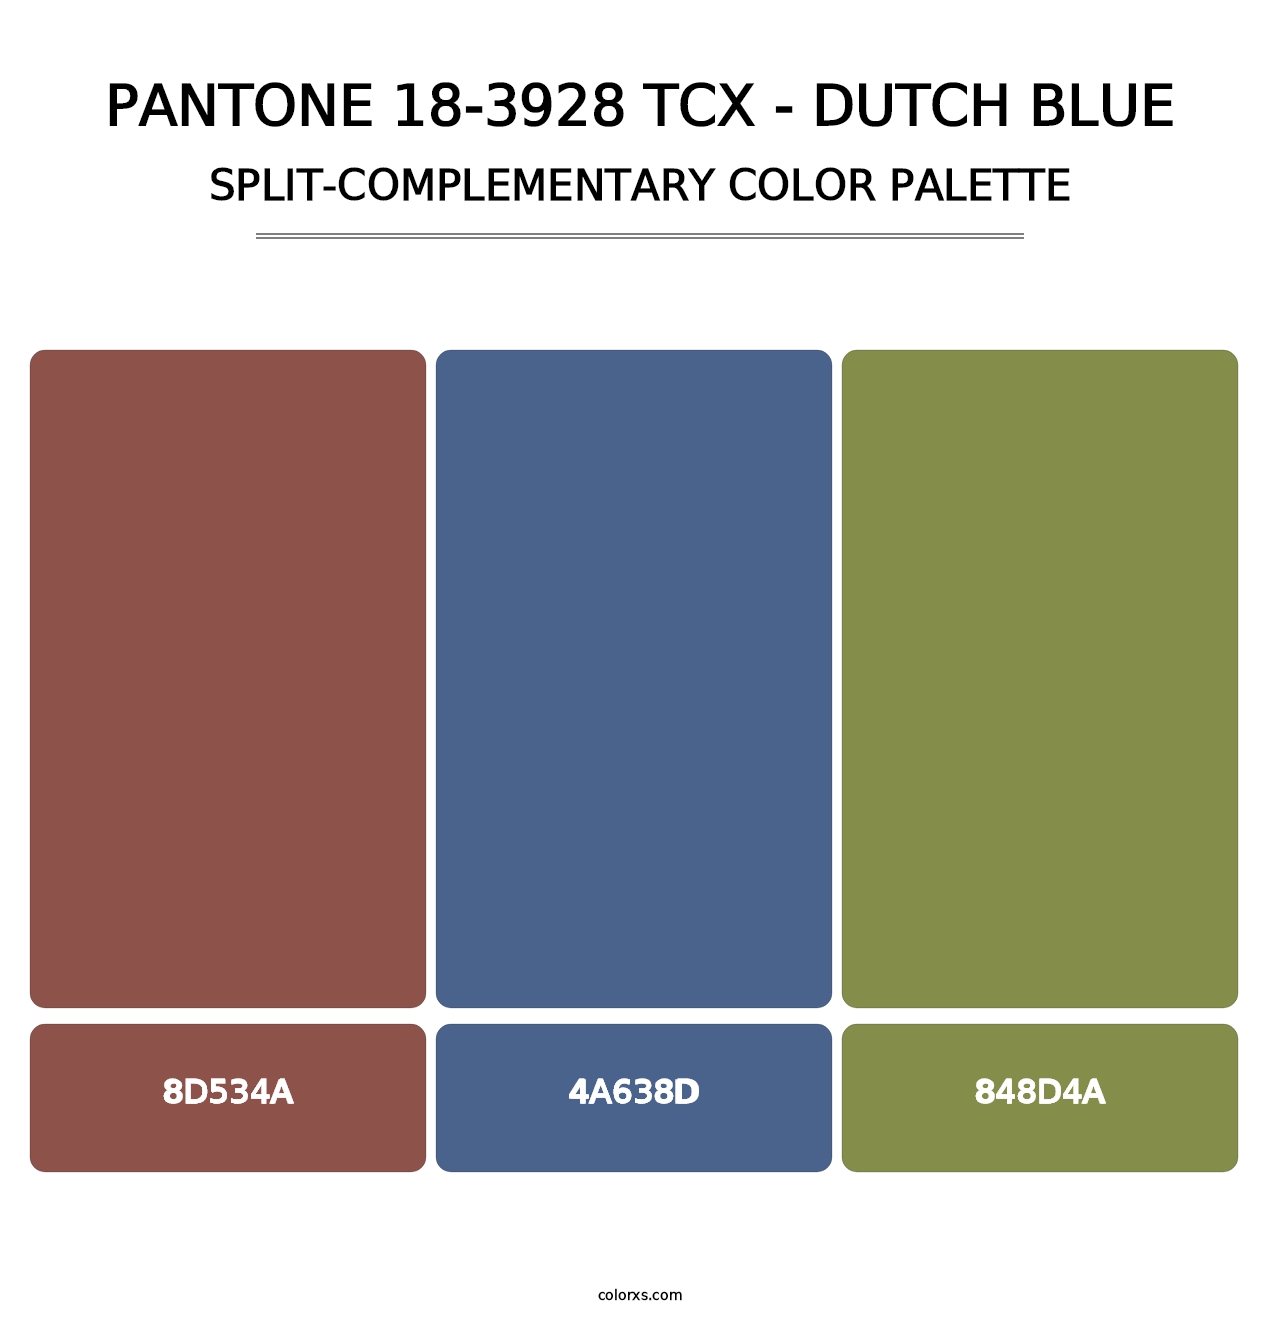 PANTONE 18-3928 TCX - Dutch Blue - Split-Complementary Color Palette